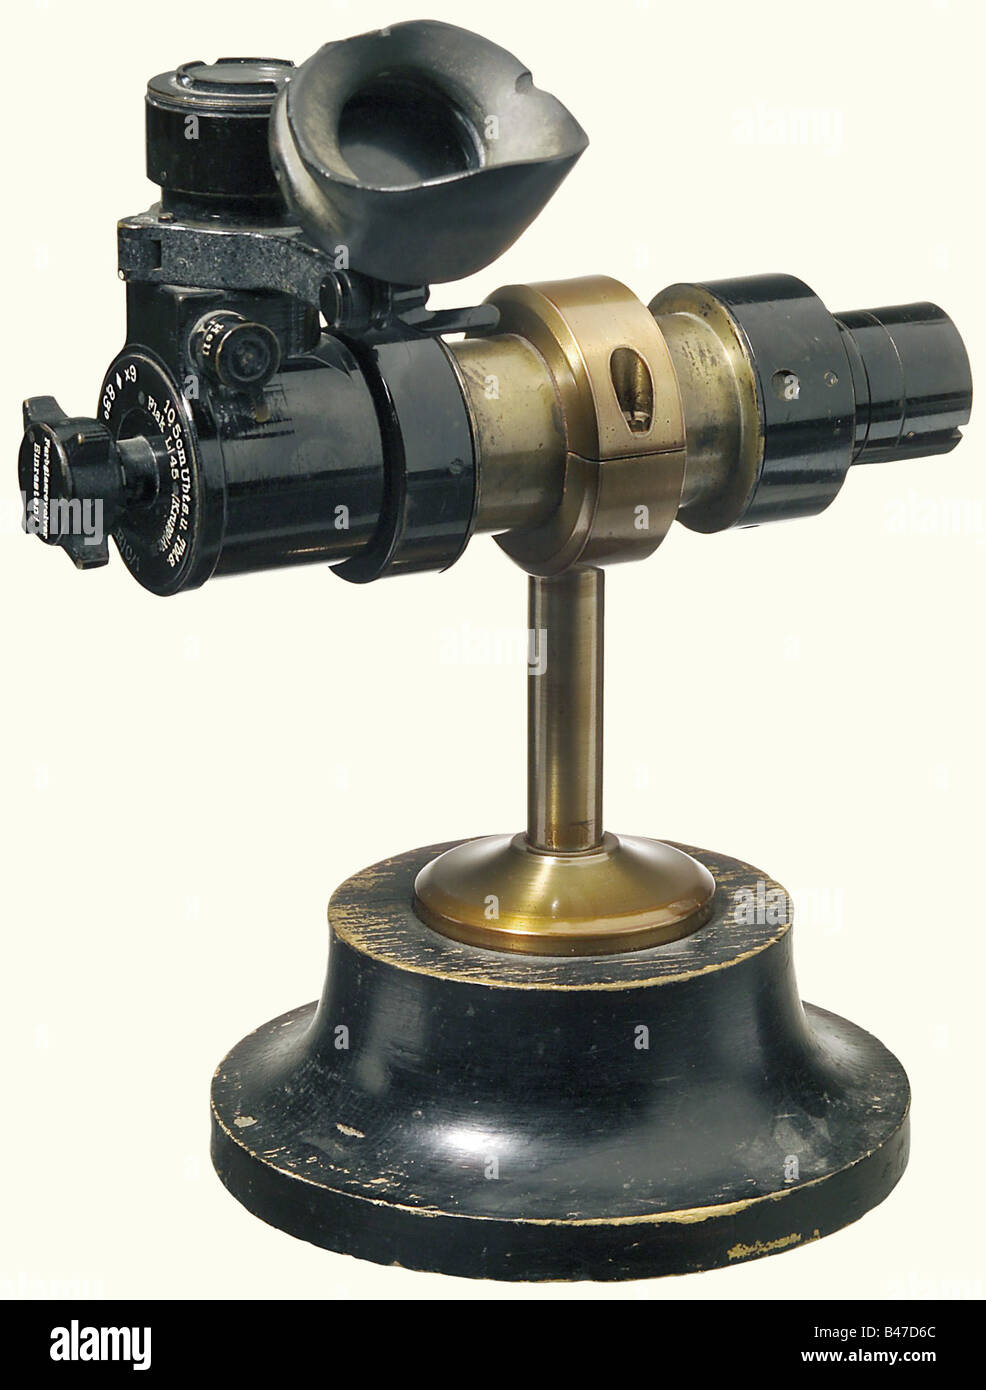 Optische Sehenswürdigkeiten für U-Boote, Typ U. Z.(s. E.) C/1,6 x 8.3ø von der Carl Zeiss Firma Jena. Schwarz lackierte Optik für 10,5-cm-Kanonen und Flugabwehrkanonen, die von der Firma ThyssenKrupp hergestellt wurden, um Ziele an Land, auf See und in der Luft zu erreichen. Gerades Teleskoprohr mit doppeltem Augenschutz (auf einer Seite fehlt der Gummiaugenring) für die rechte oder linke Ausrichtung beweglich. Ein integriertes Gerät zum Austausch farbiger Linsen (eine klar und drei farbig) zum Schutz vor Blendung und Anpassung bei hohen oder niedrigen Kontrasten. Helligkeits- und Helligkeitsschalter. Länge 25 cm historisch, histo, Stockfoto